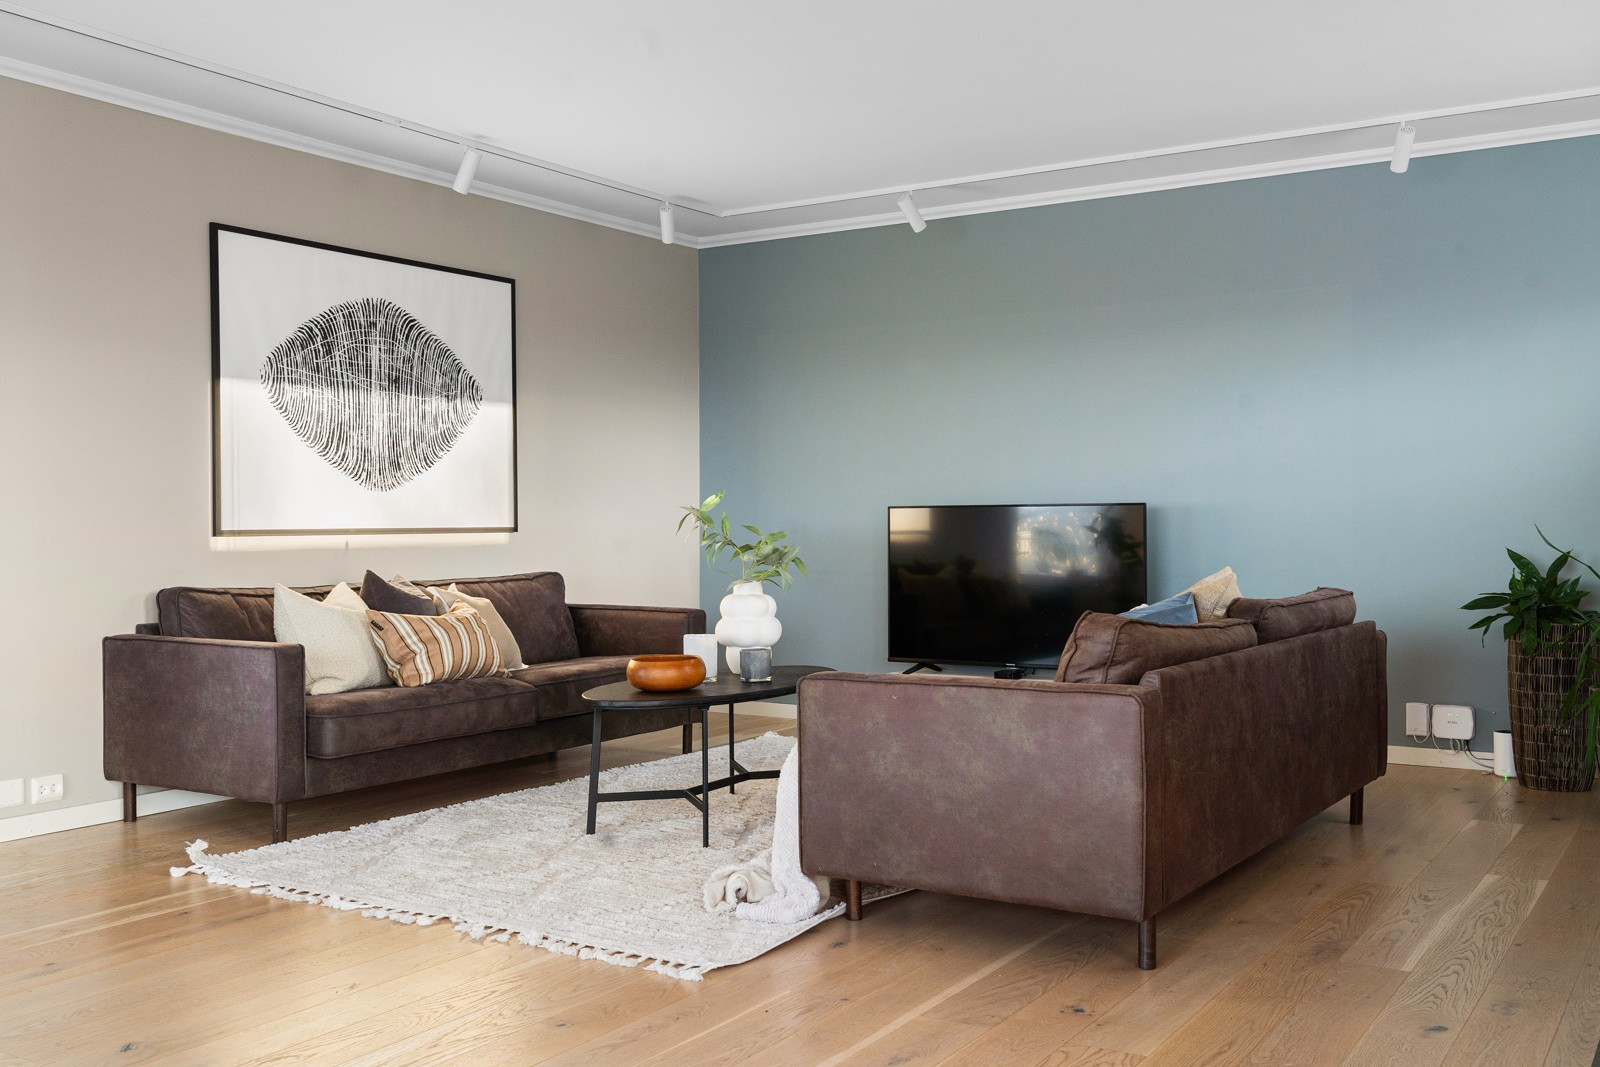 Bak i stuen har du plass til både sofa og mediekonsoller.